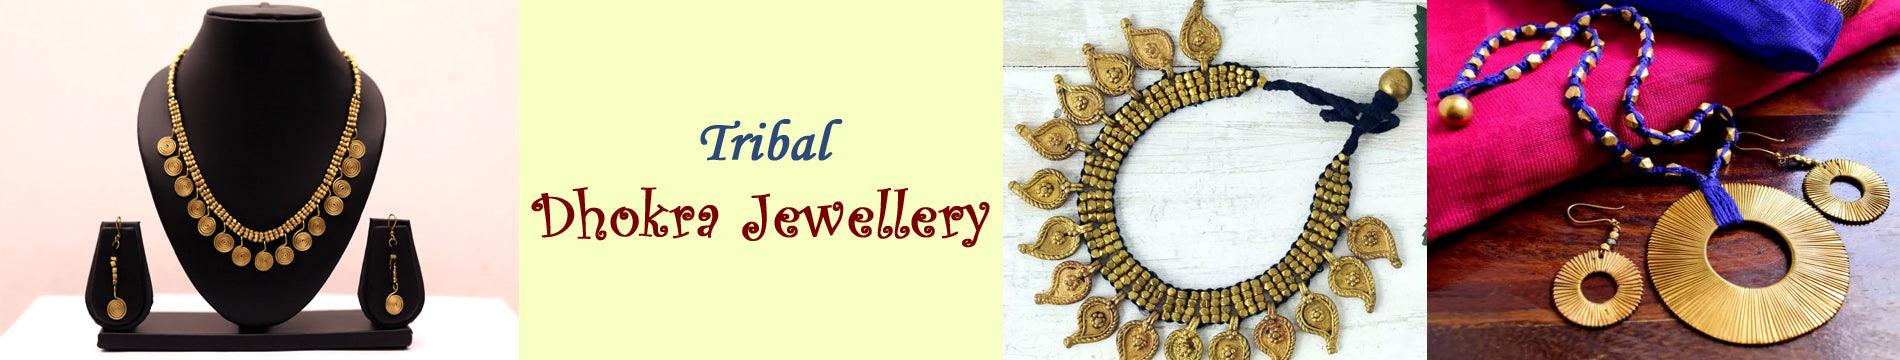 Jewellery - tribal-jewelry